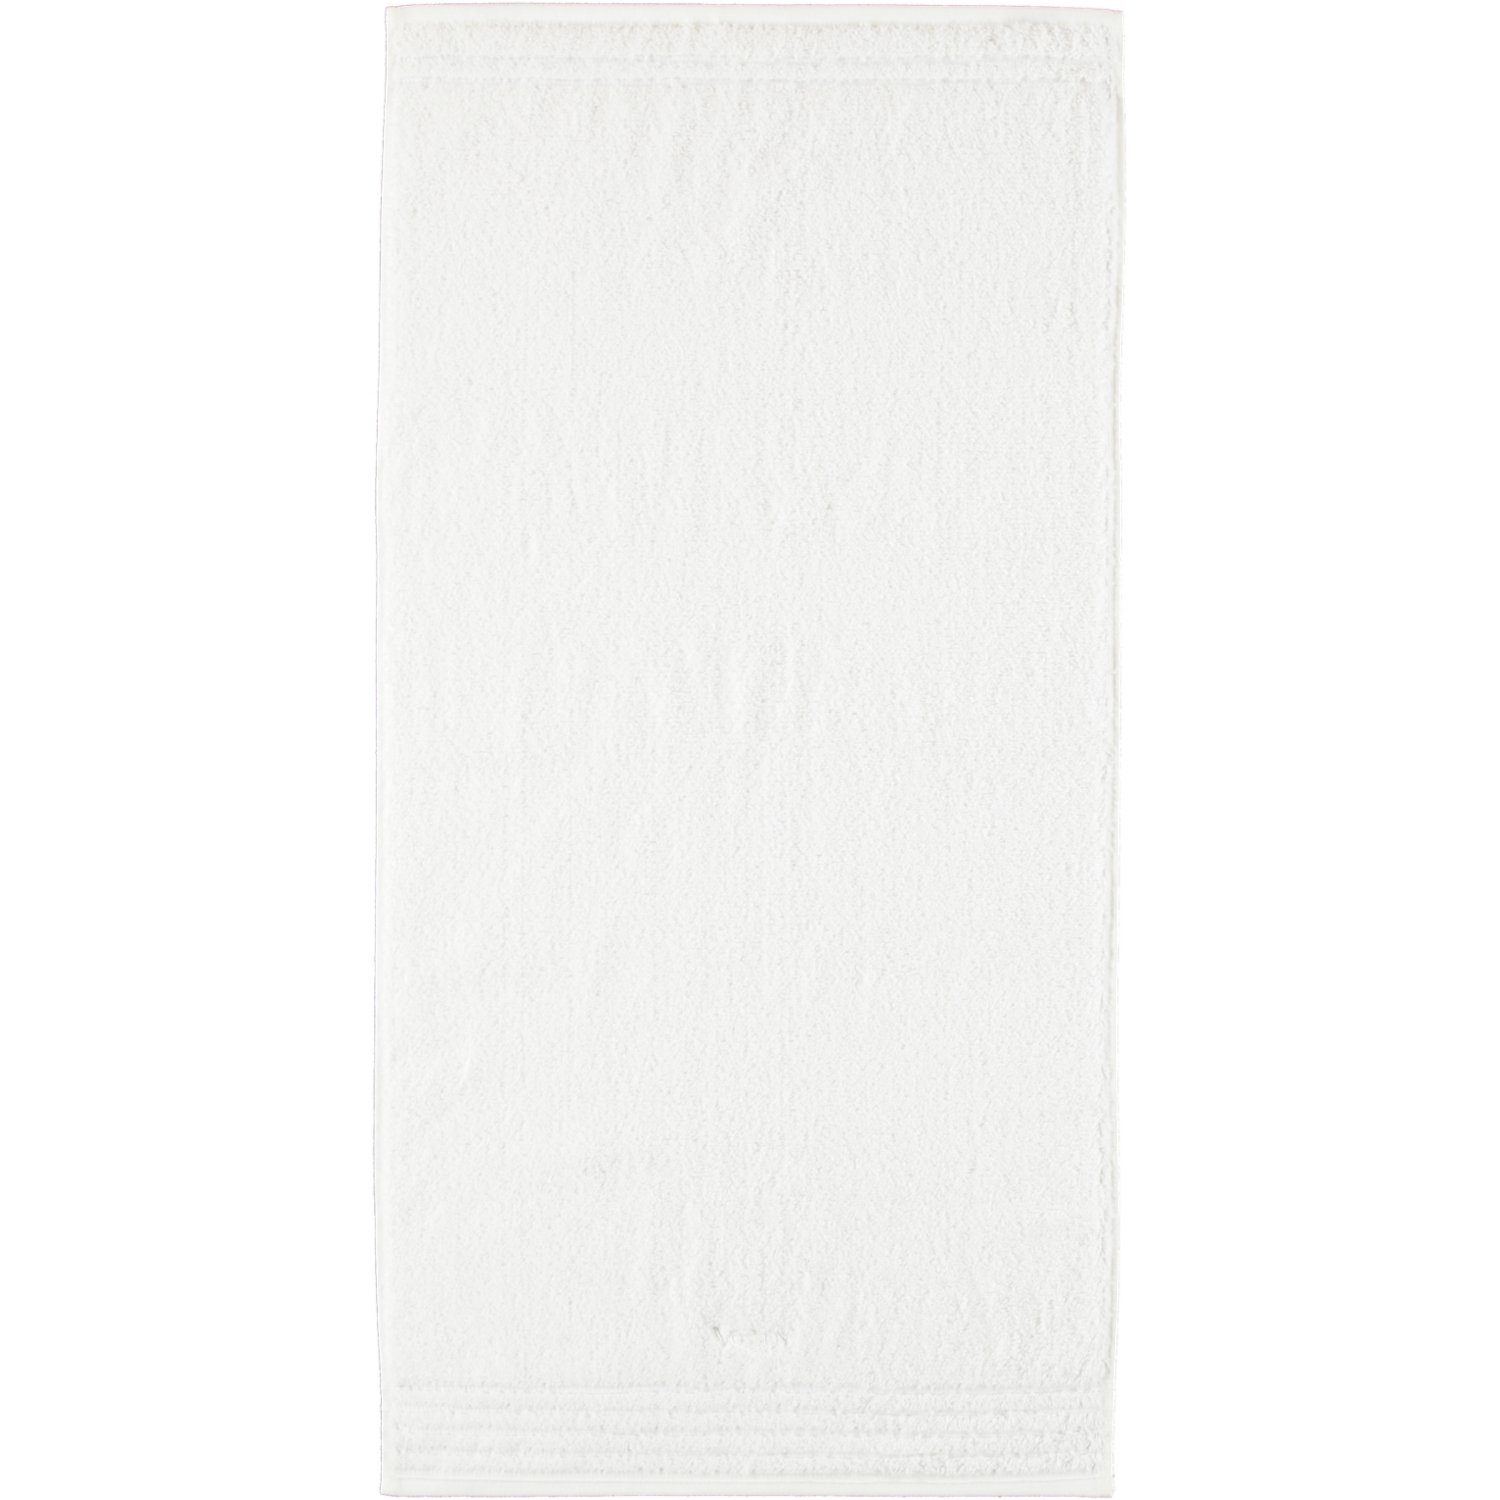 Supersoft, Vossen Handtücher - Vienna Baumwolle 030 weiß Style 100%